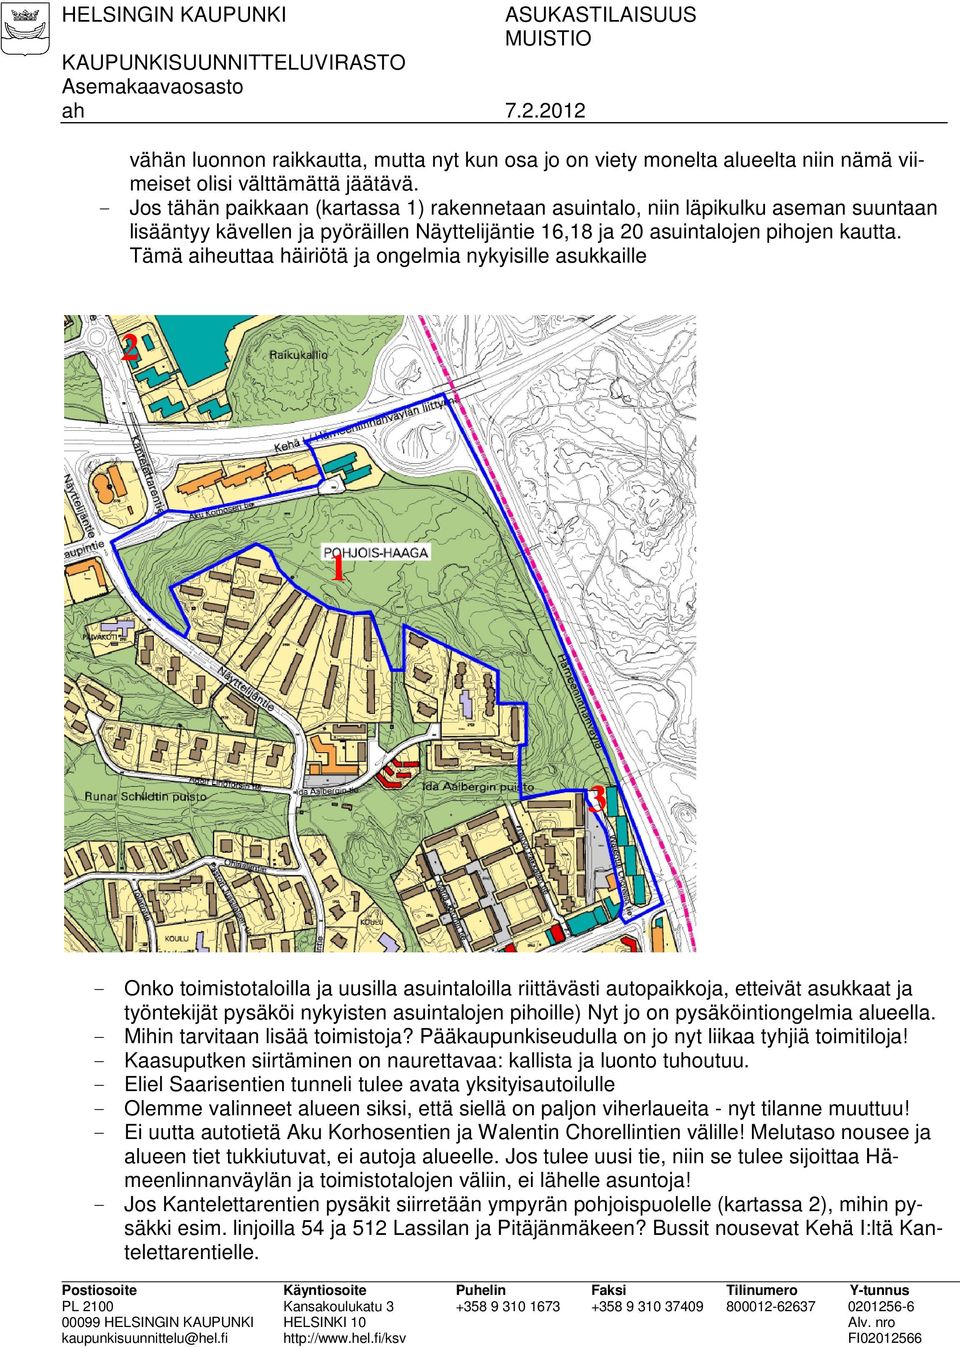 - Jos tähän paikkaan (kartassa 1) rakennetaan asuintalo, niin läpikulku aseman suuntaan lisääntyy kävellen ja pyöräillen Näyttelijäntie 16,18 ja 20 asuintalojen pihojen kautta.